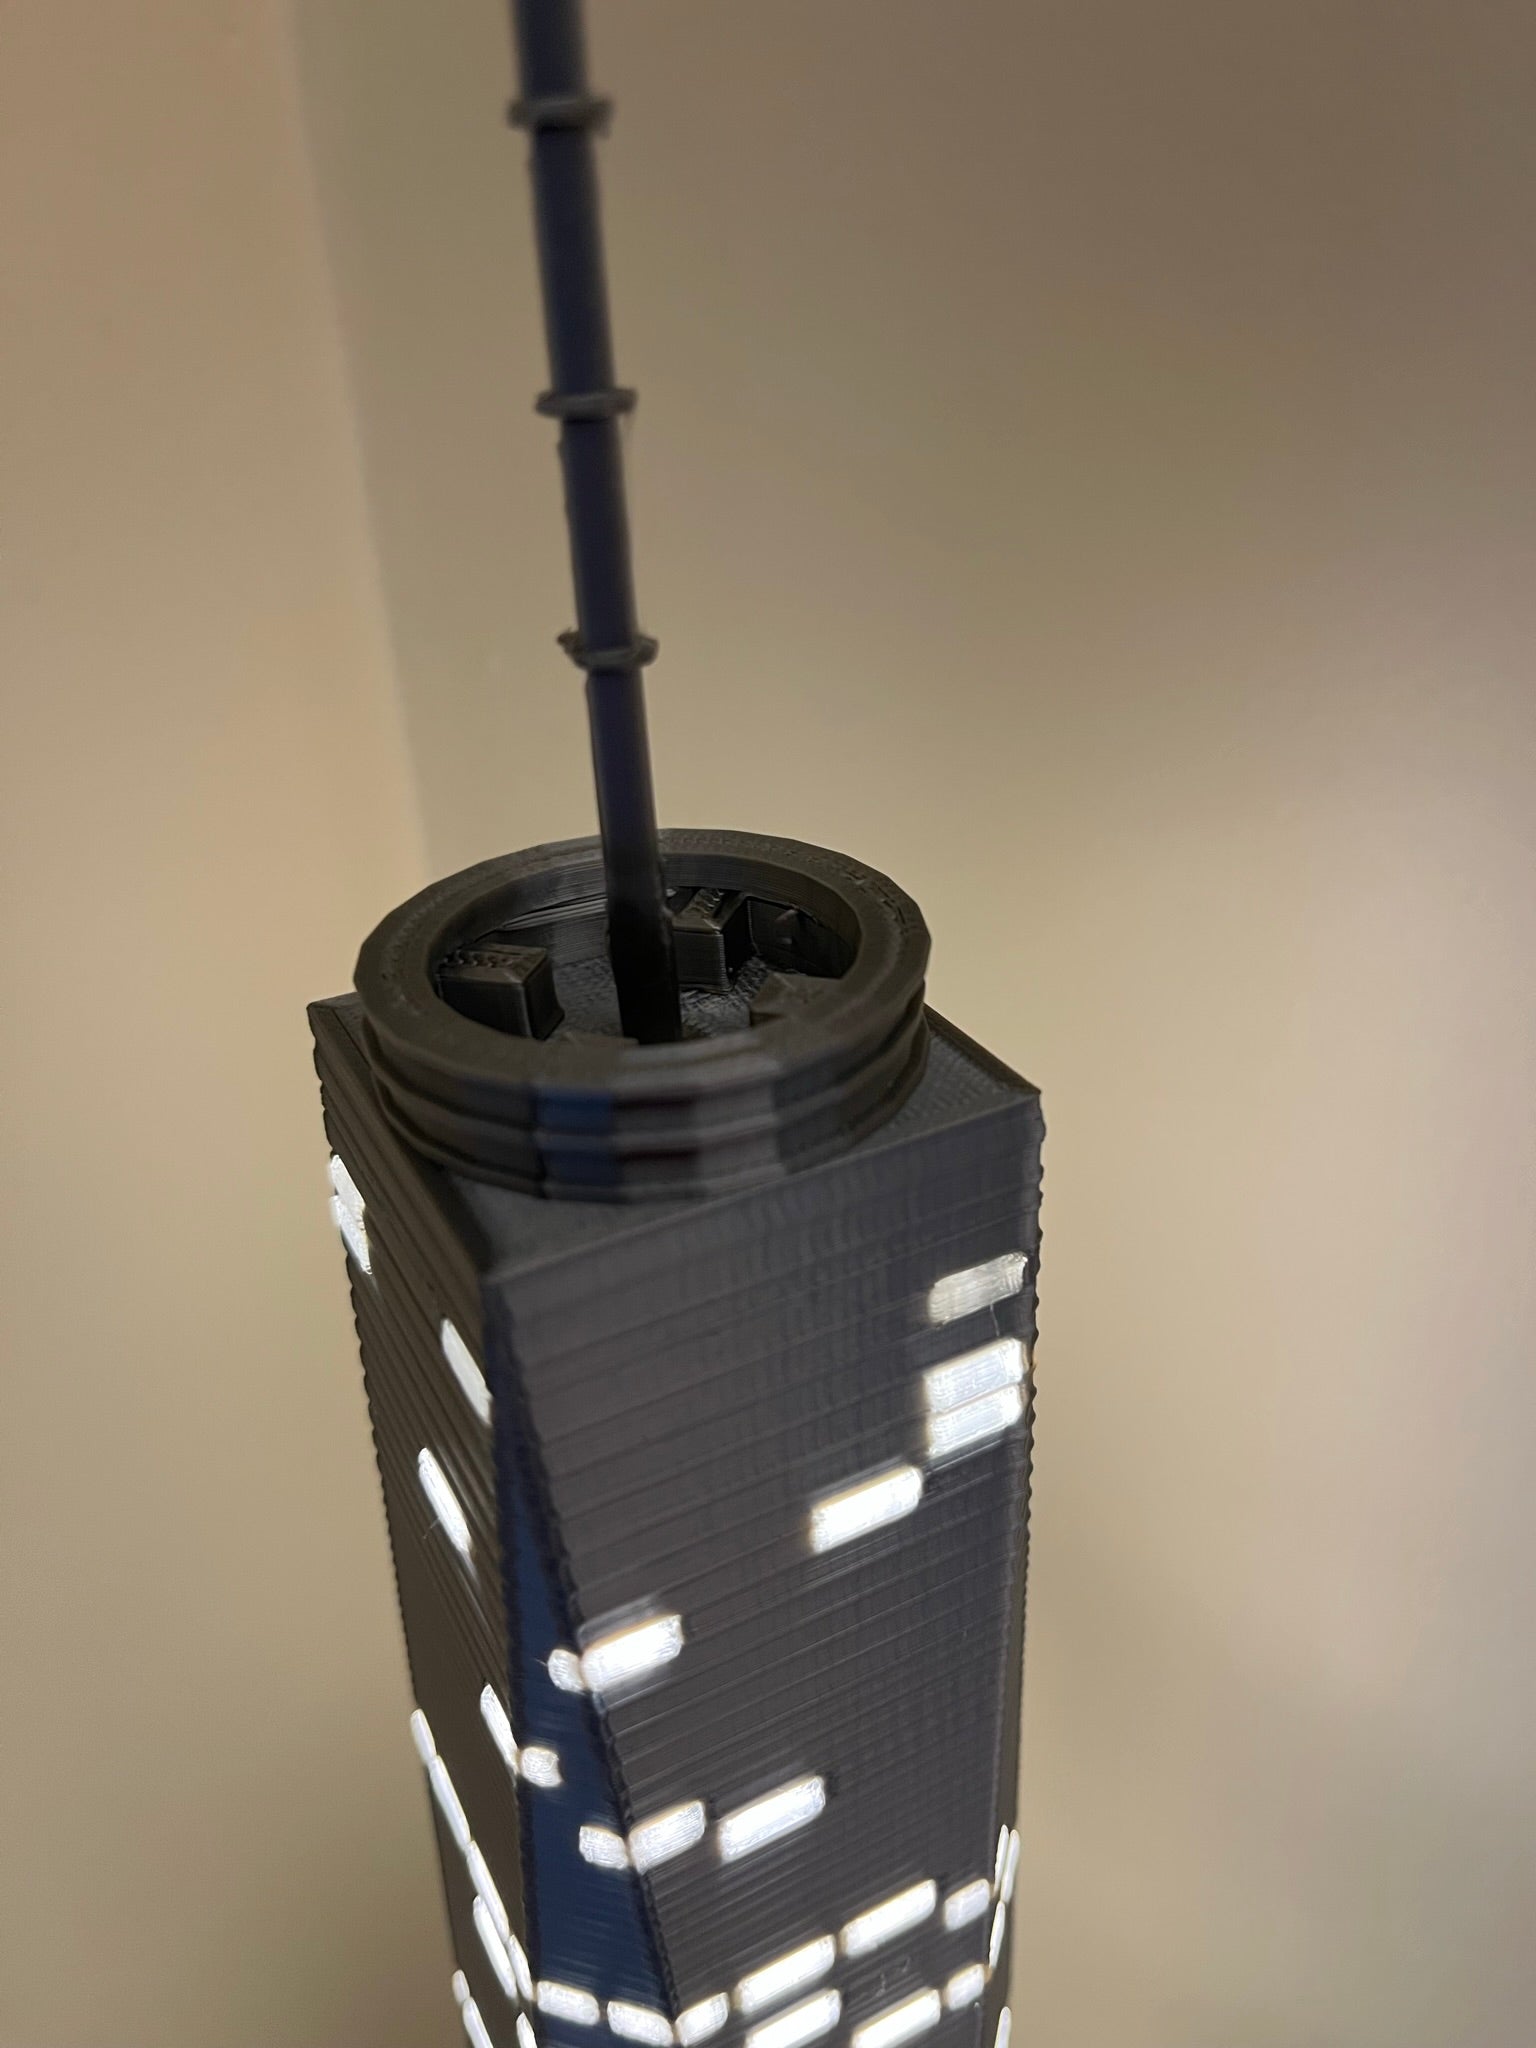 3D Printer Light Tower 